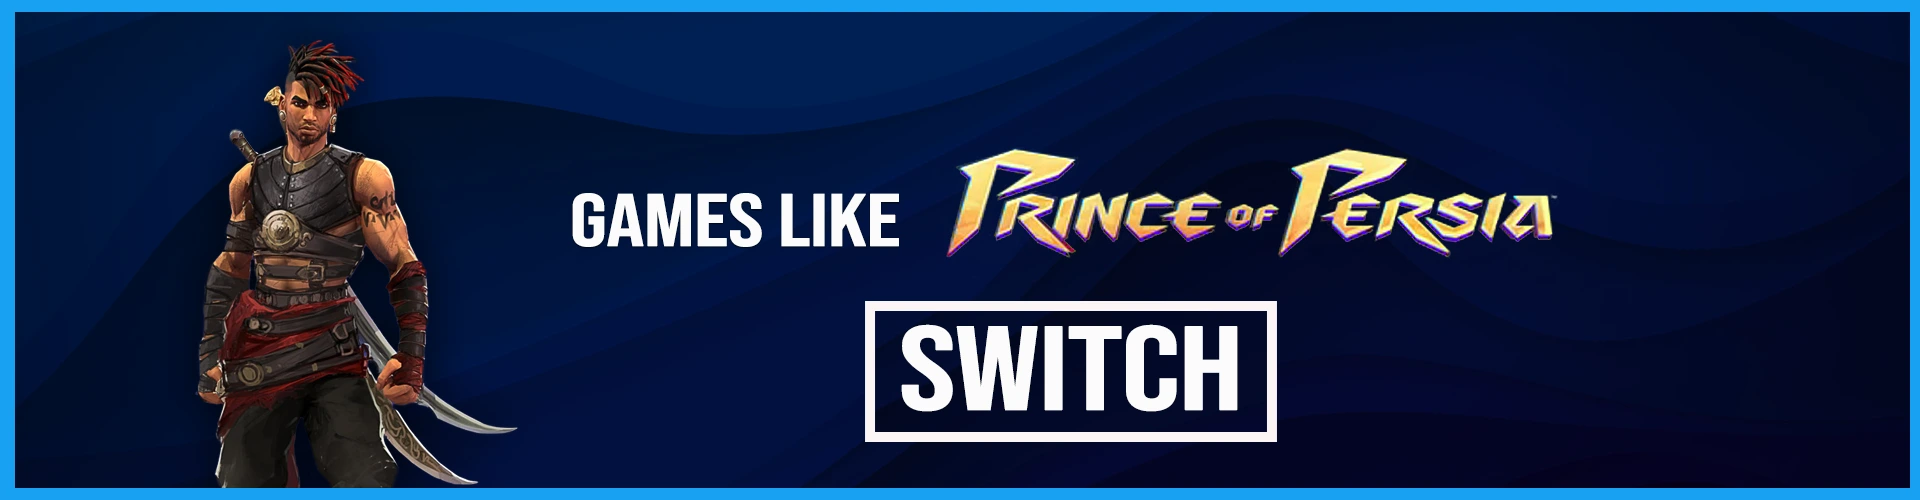 I Migliori Giochi Come Prince of Persia su Switch